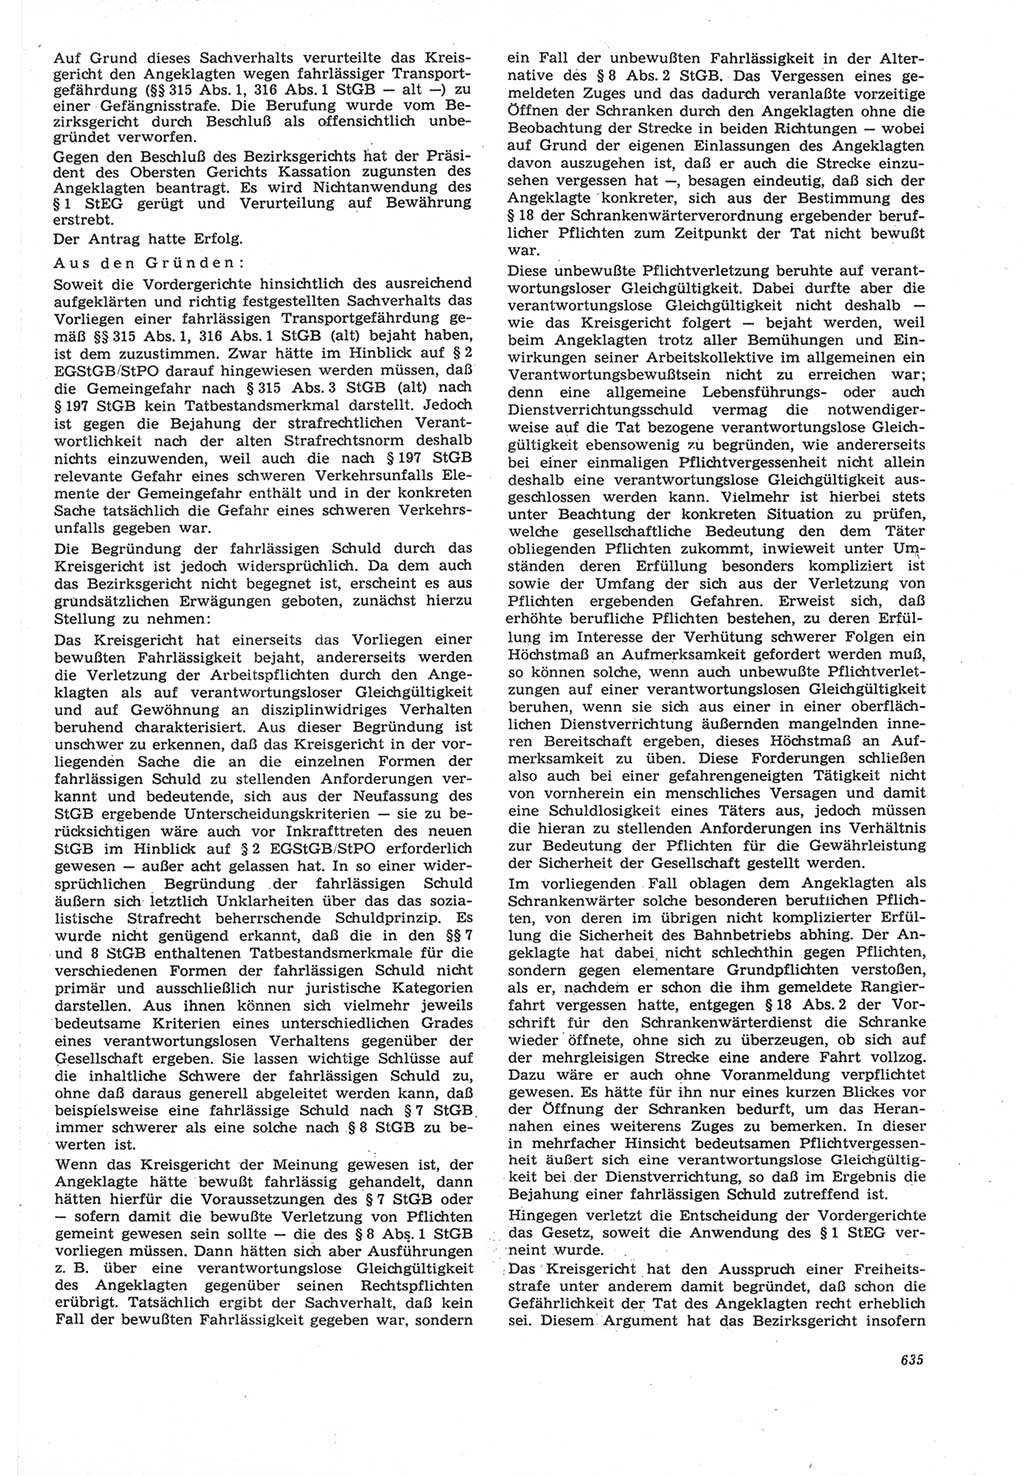 Neue Justiz (NJ), Zeitschrift für Recht und Rechtswissenschaft [Deutsche Demokratische Republik (DDR)], 22. Jahrgang 1968, Seite 635 (NJ DDR 1968, S. 635)